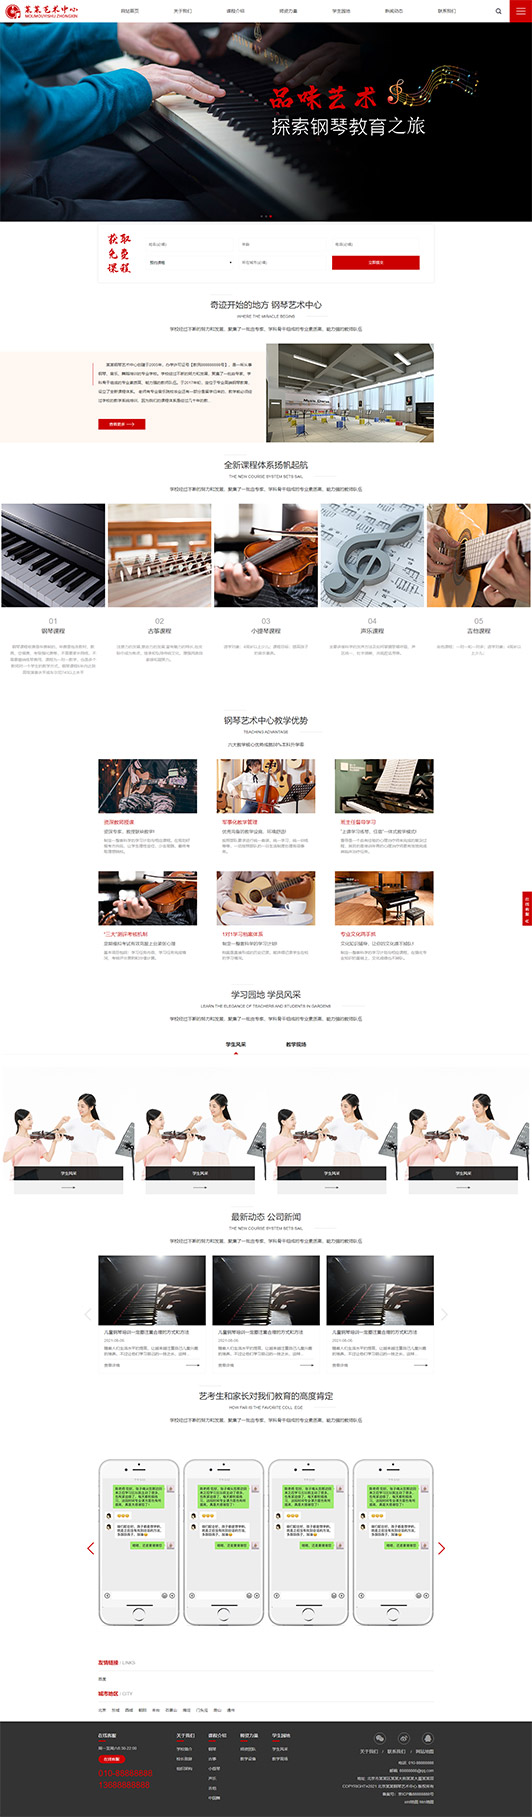 文昌钢琴艺术培训公司响应式企业网站